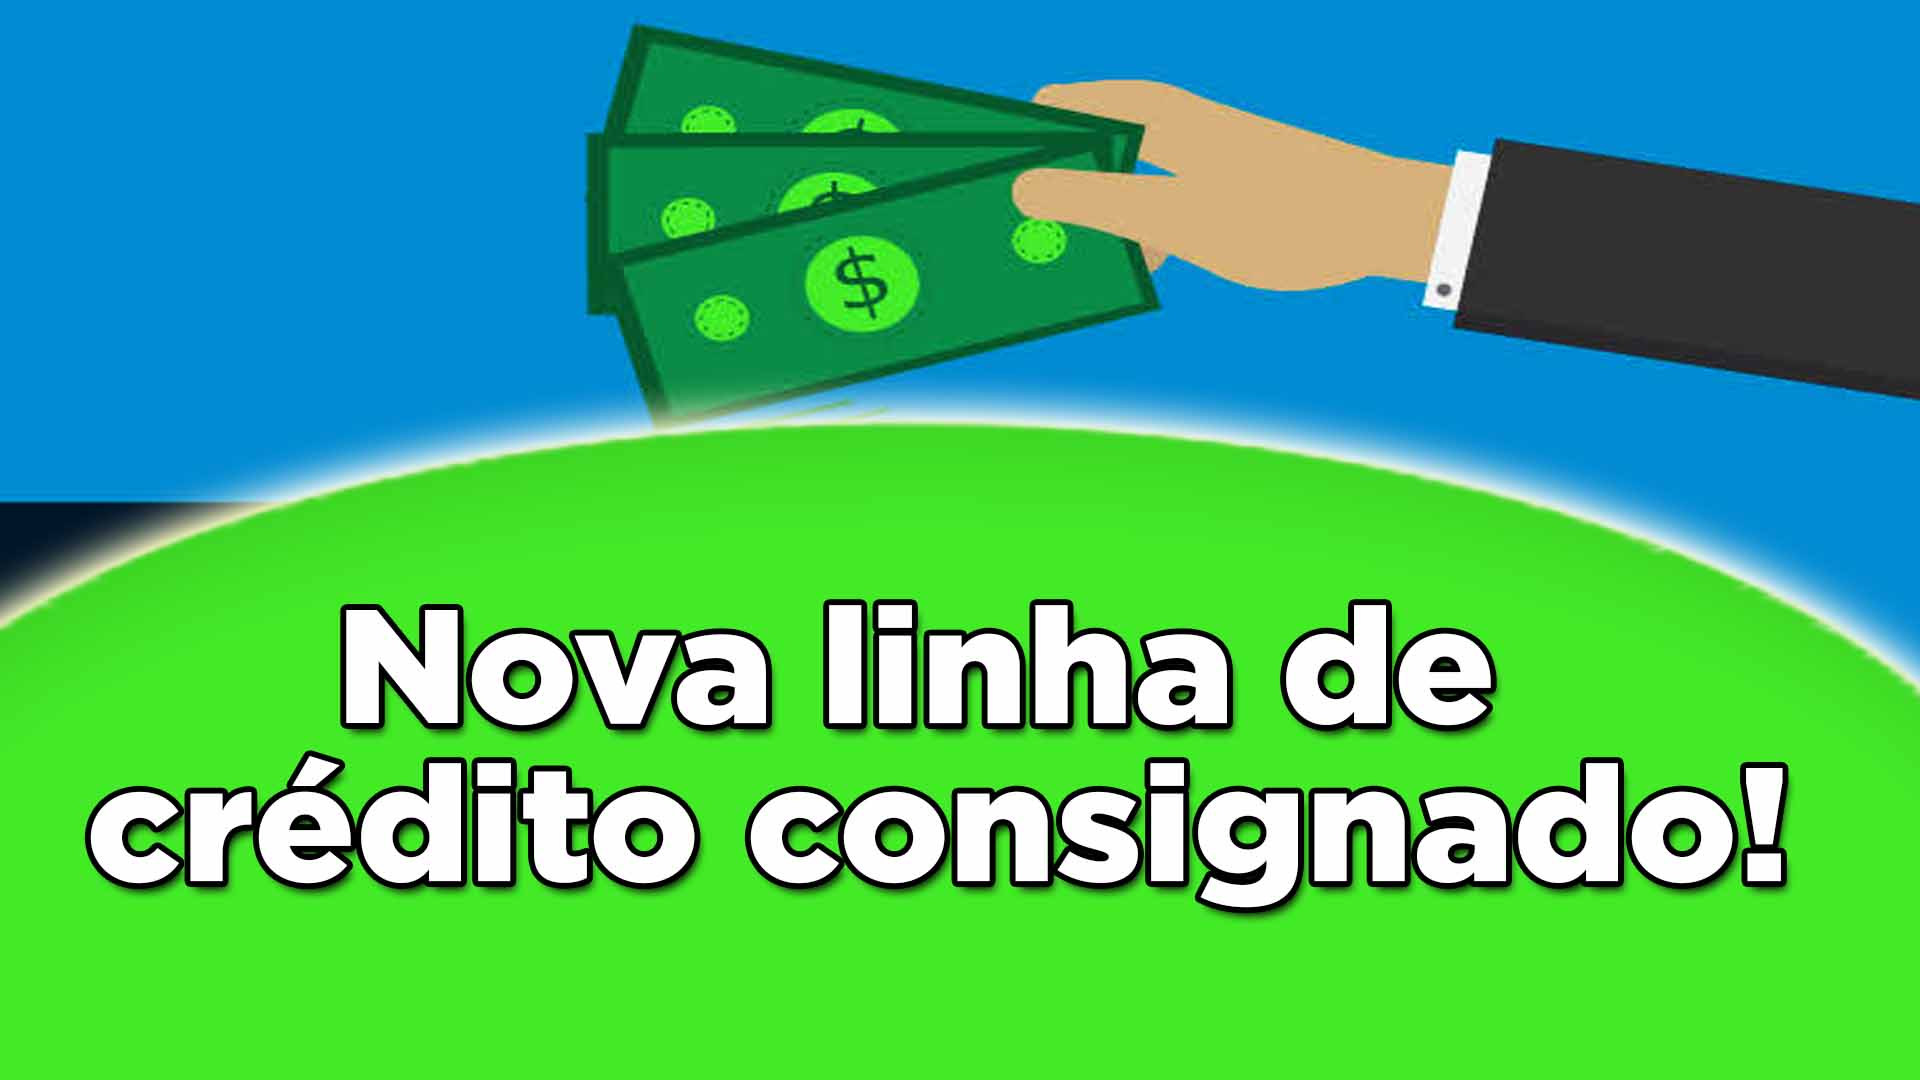 Com a aprovação de Bolsonaro, os aposentados e pensionistas terão acesso a uma modalidade de crédito com taxas de juros acessíveis! Confira: